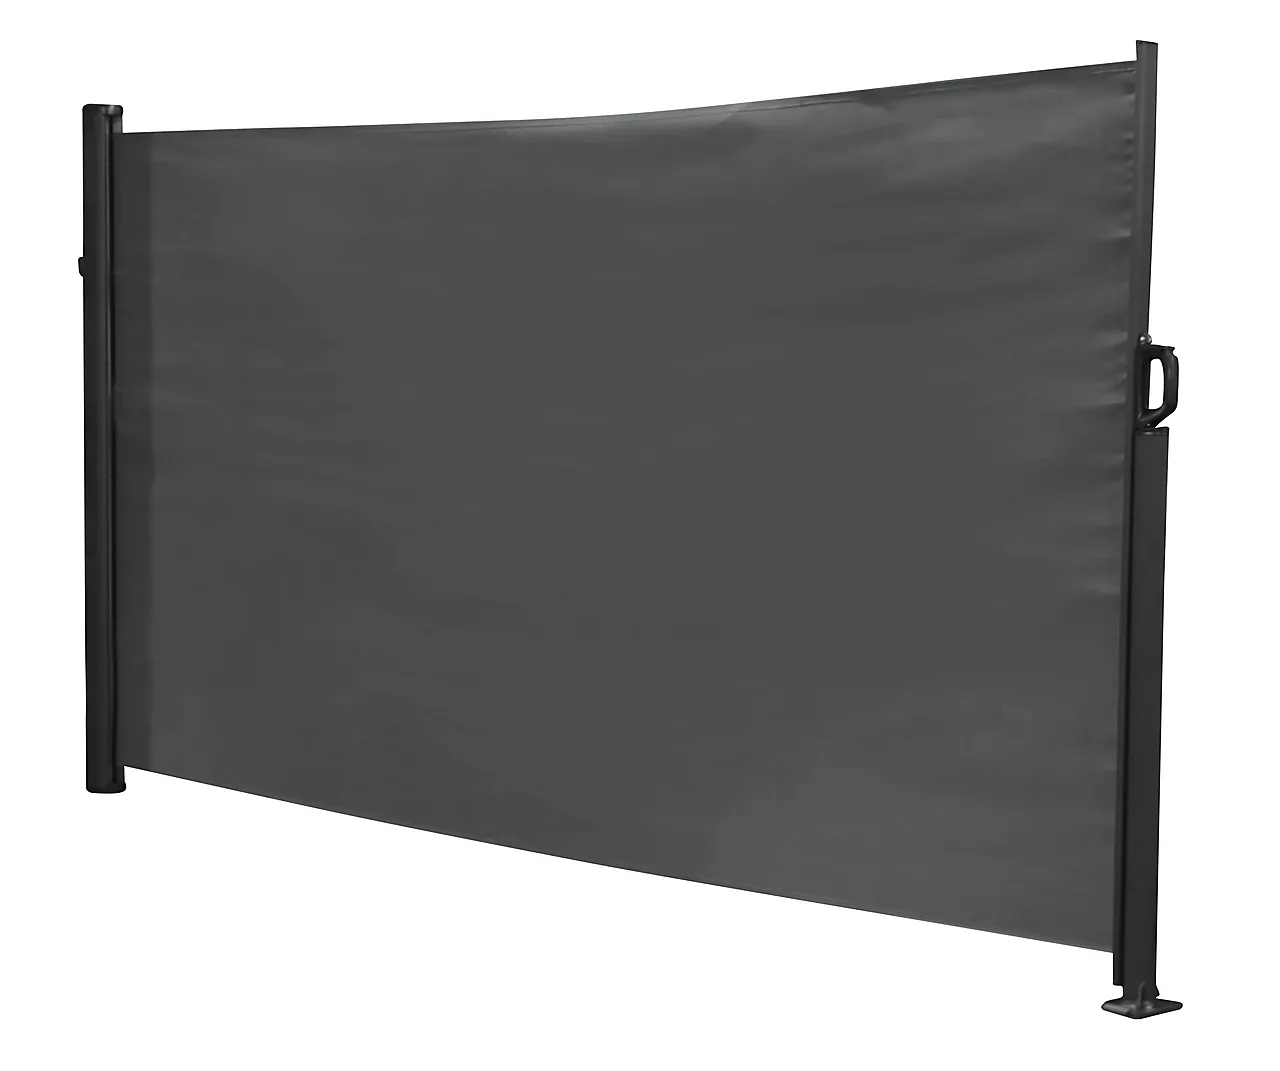 Levegg uttrekkbar sort/grå 3x1,6 meter null - null - 2 - Miniatyr